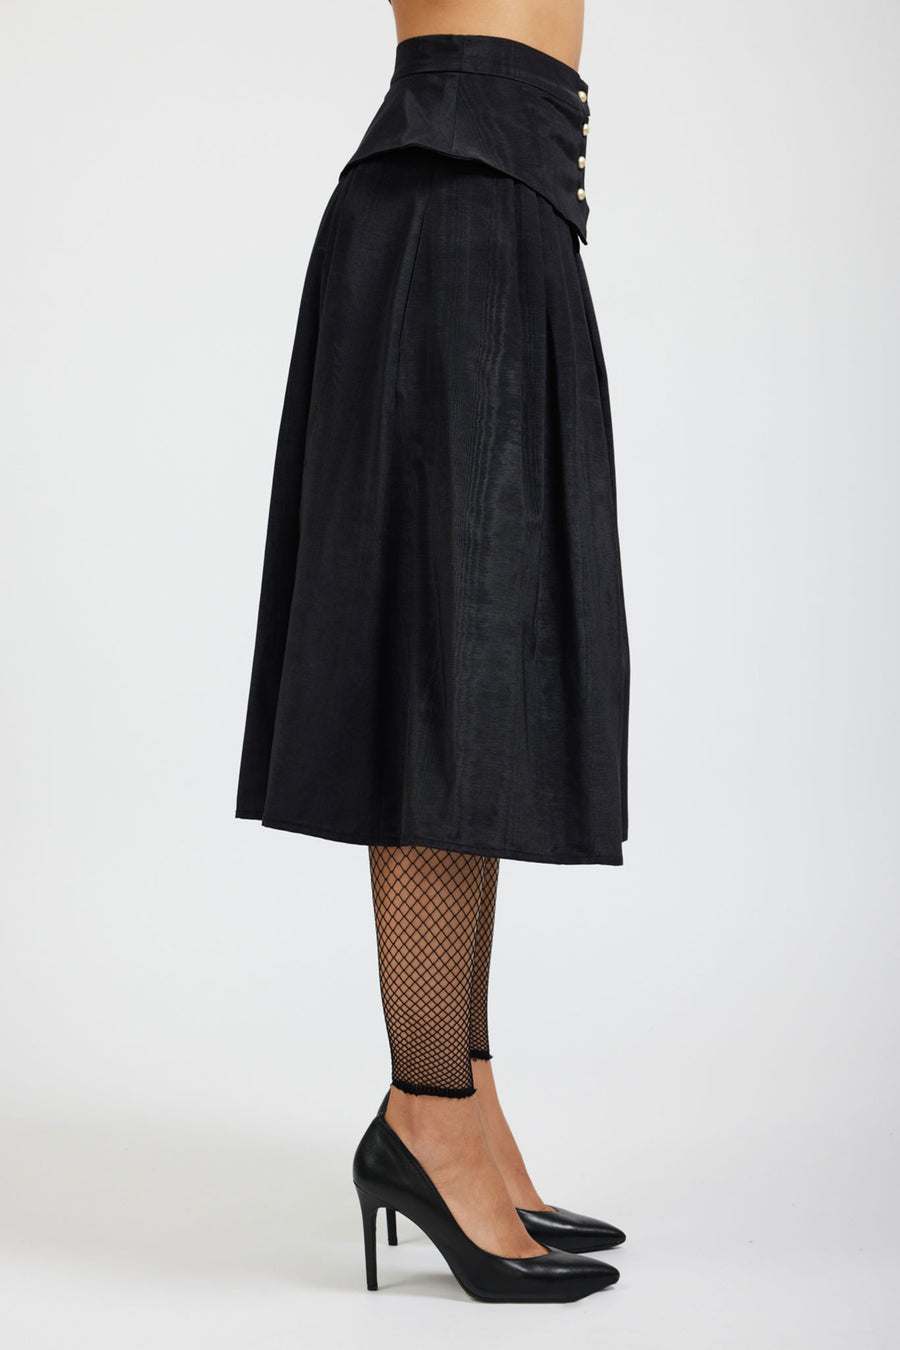 BATSHEVA - Landa Skirt in Black Moiré